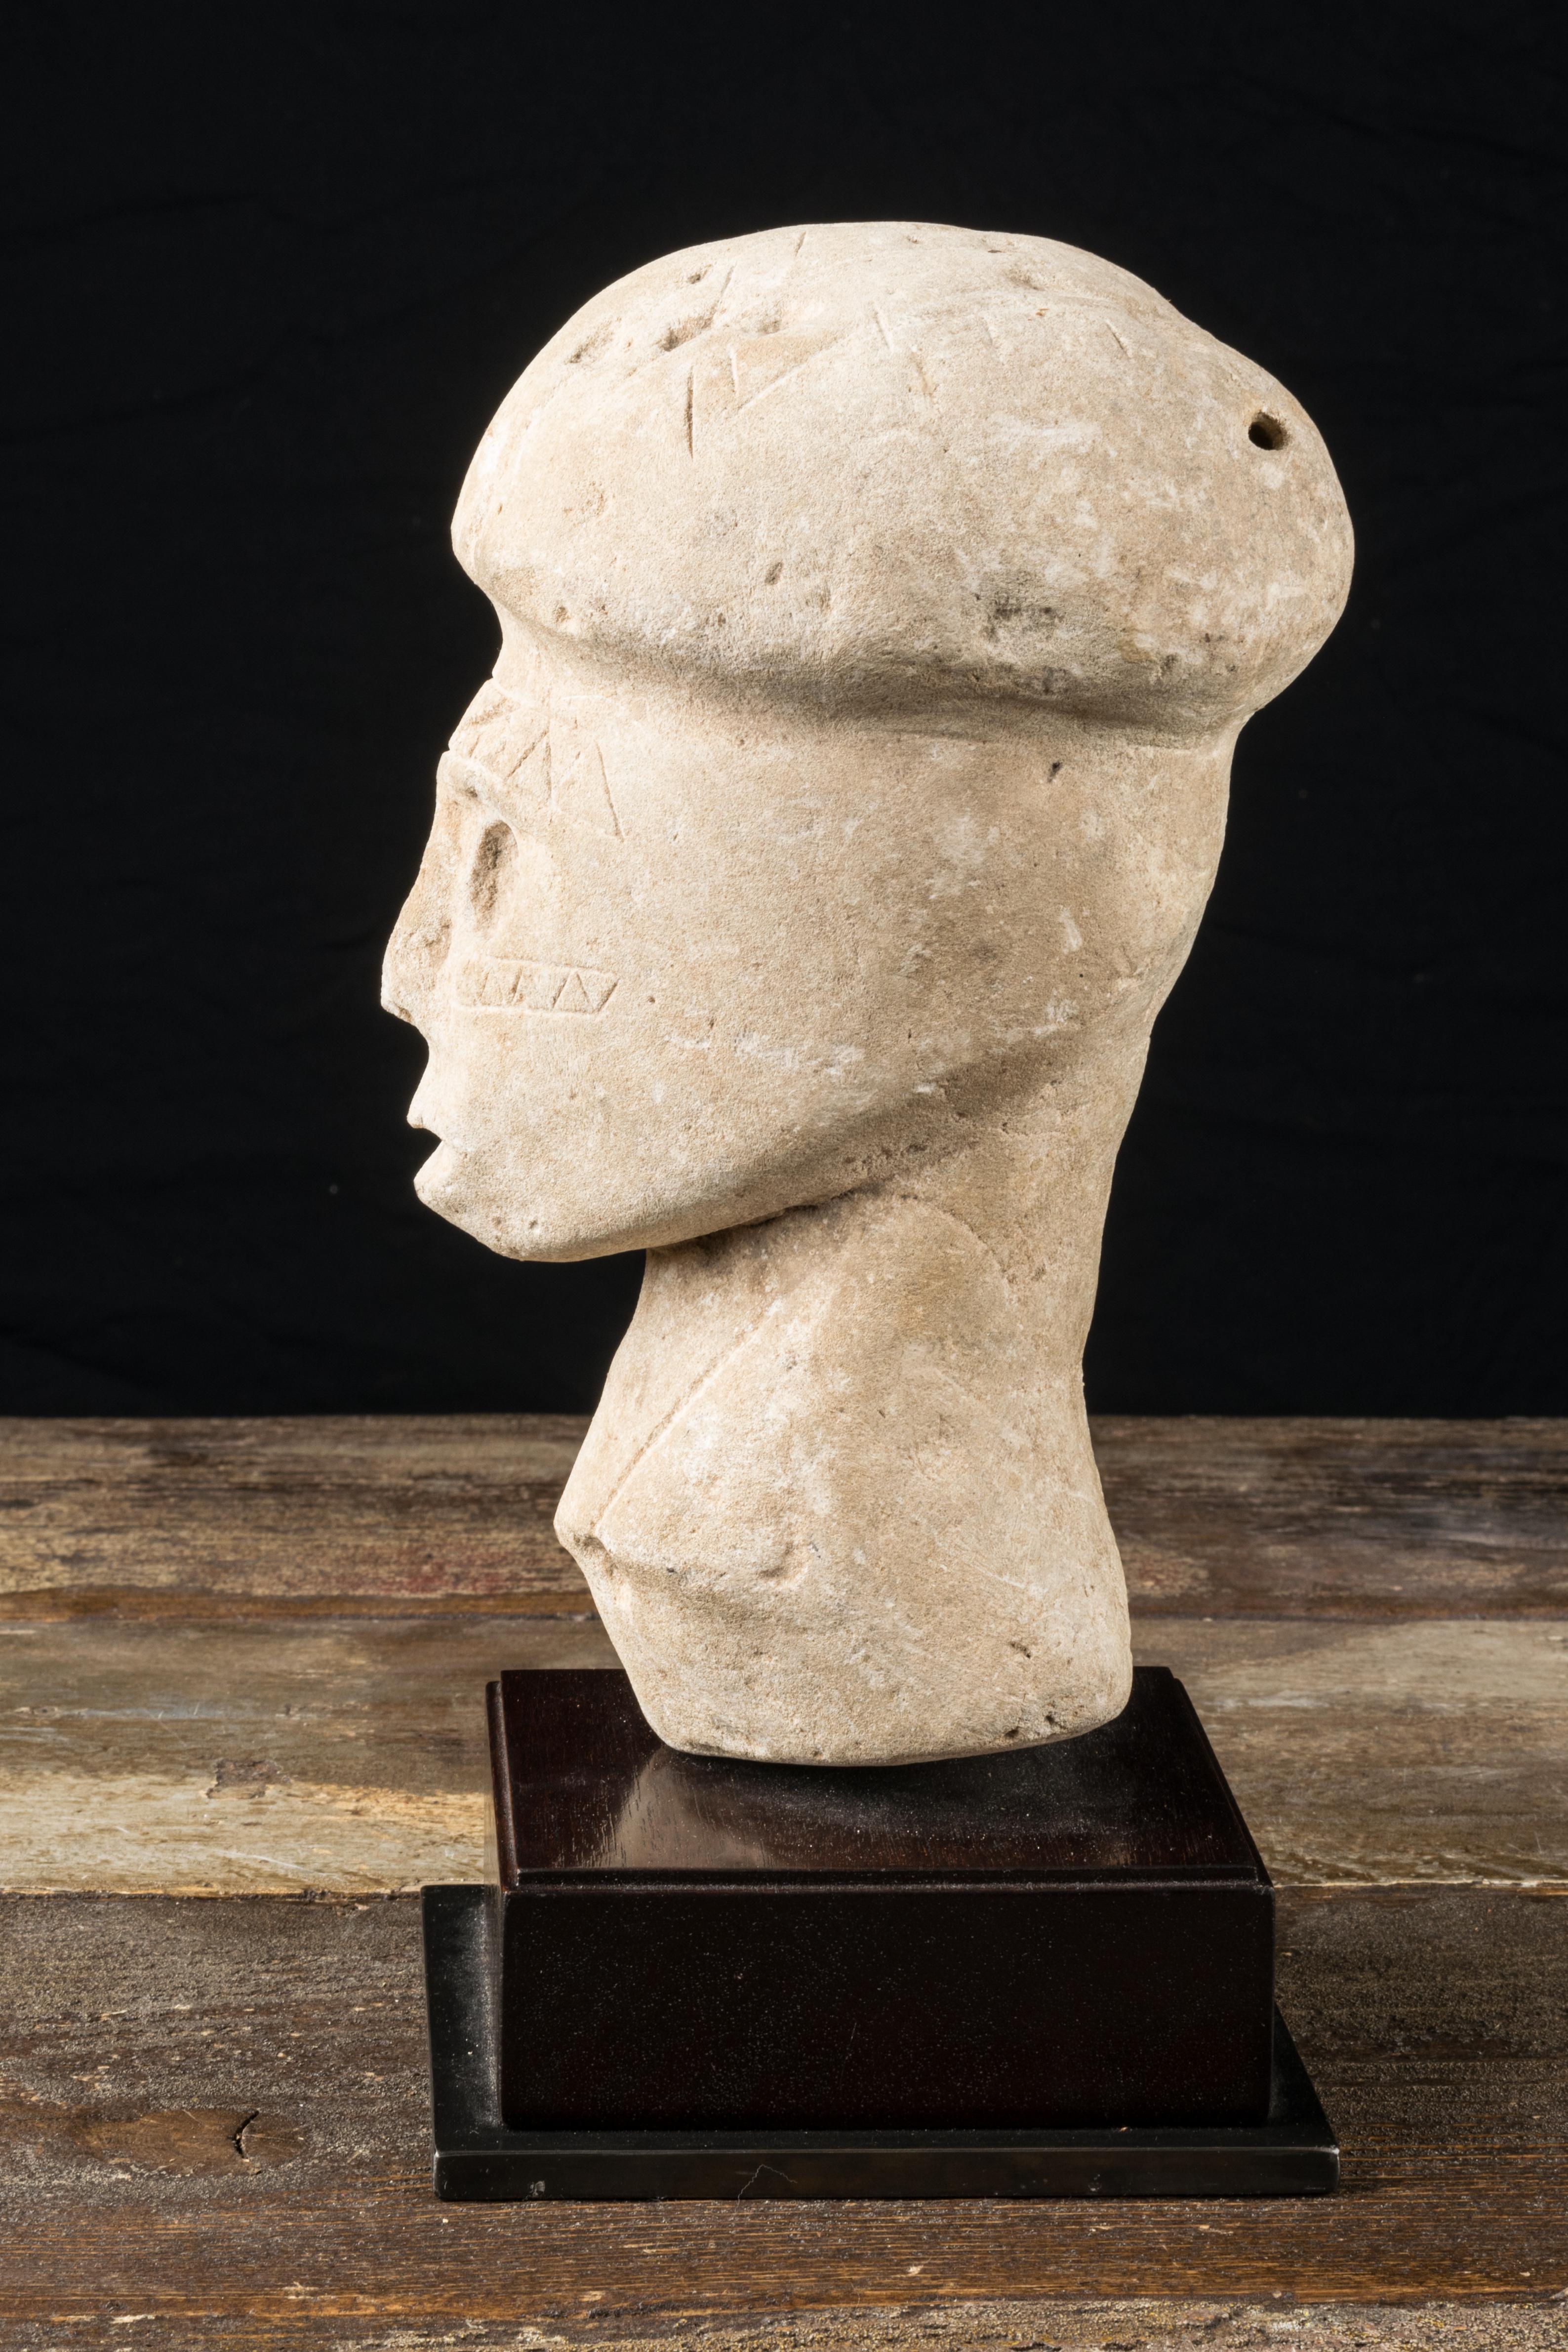 Les tribus des îles Salomon vénéraient les crânes de leurs ancêtres comme étant la demeure de leurs esprits. Si aucun vestige d'un grand homme n'était conservé ou disponible, une tête sculptée stylisée pouvait fournir un symbole approximatif. Ces